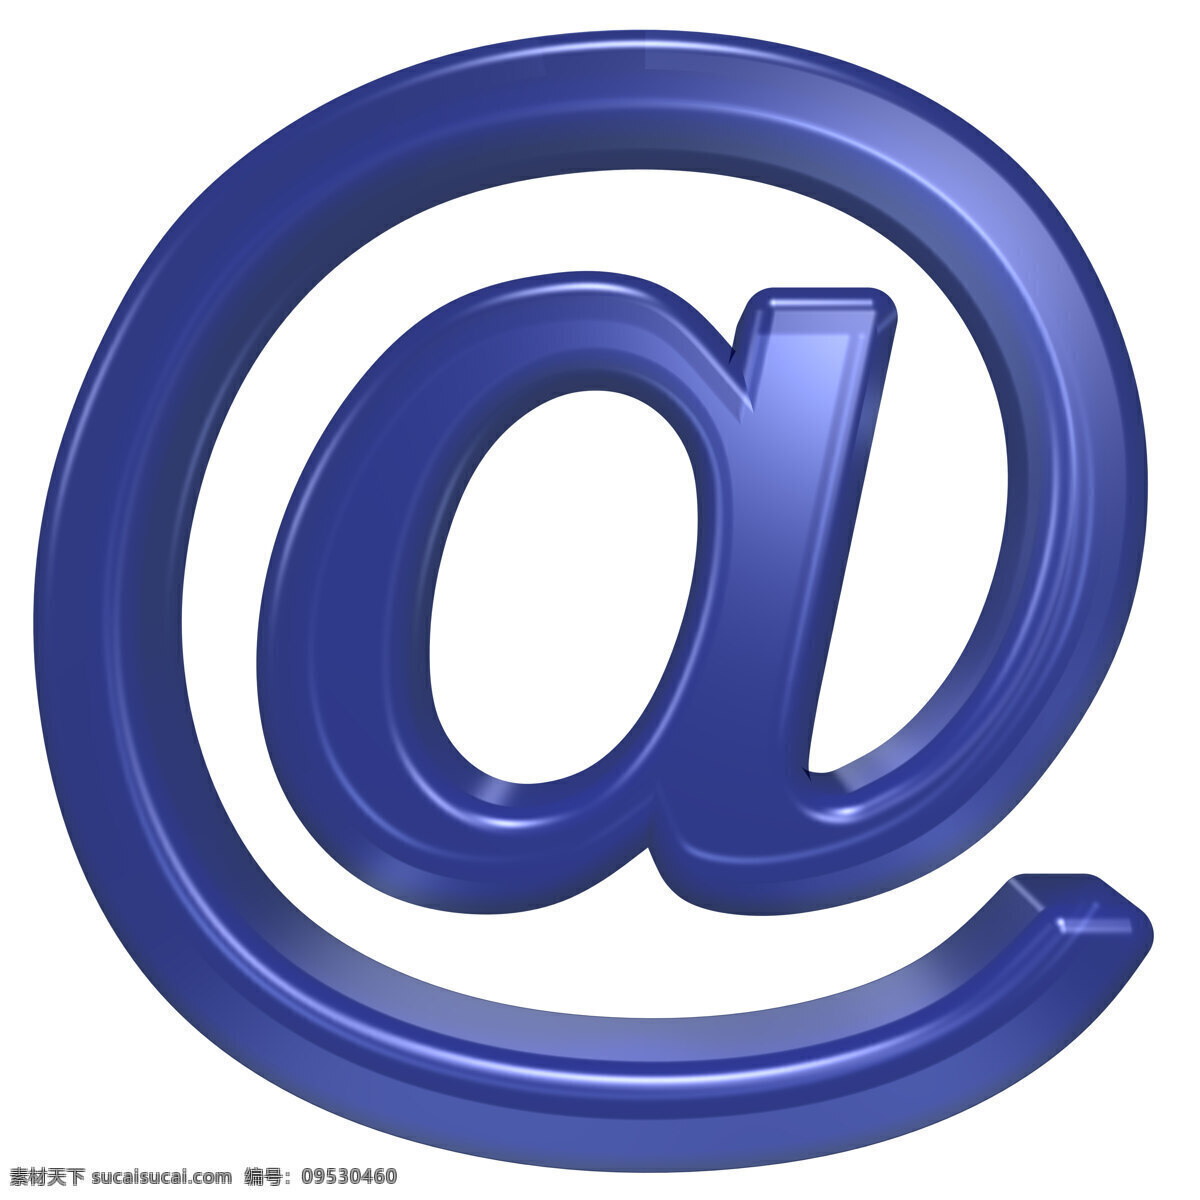 电子邮件 符号 蓝色 玻璃 字母 集 白色